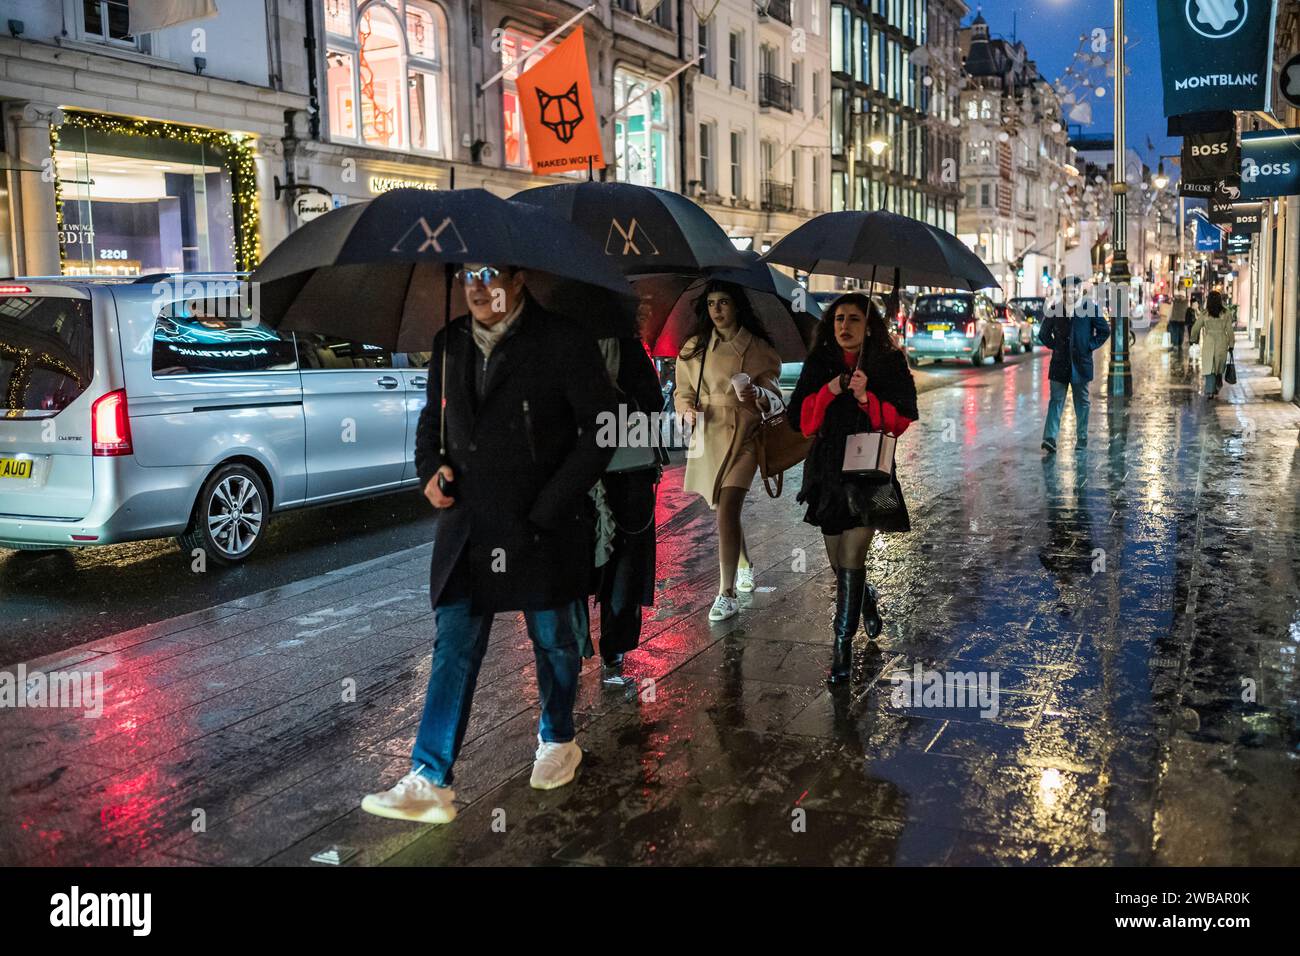 Gli amanti dello shopping affrontano il freddo inverno durante le fredde nevi e le docce a pioggia in Old Bond Street, l'etichetta di lusso di Londra Street, Inghilterra, Regno Unito Foto Stock